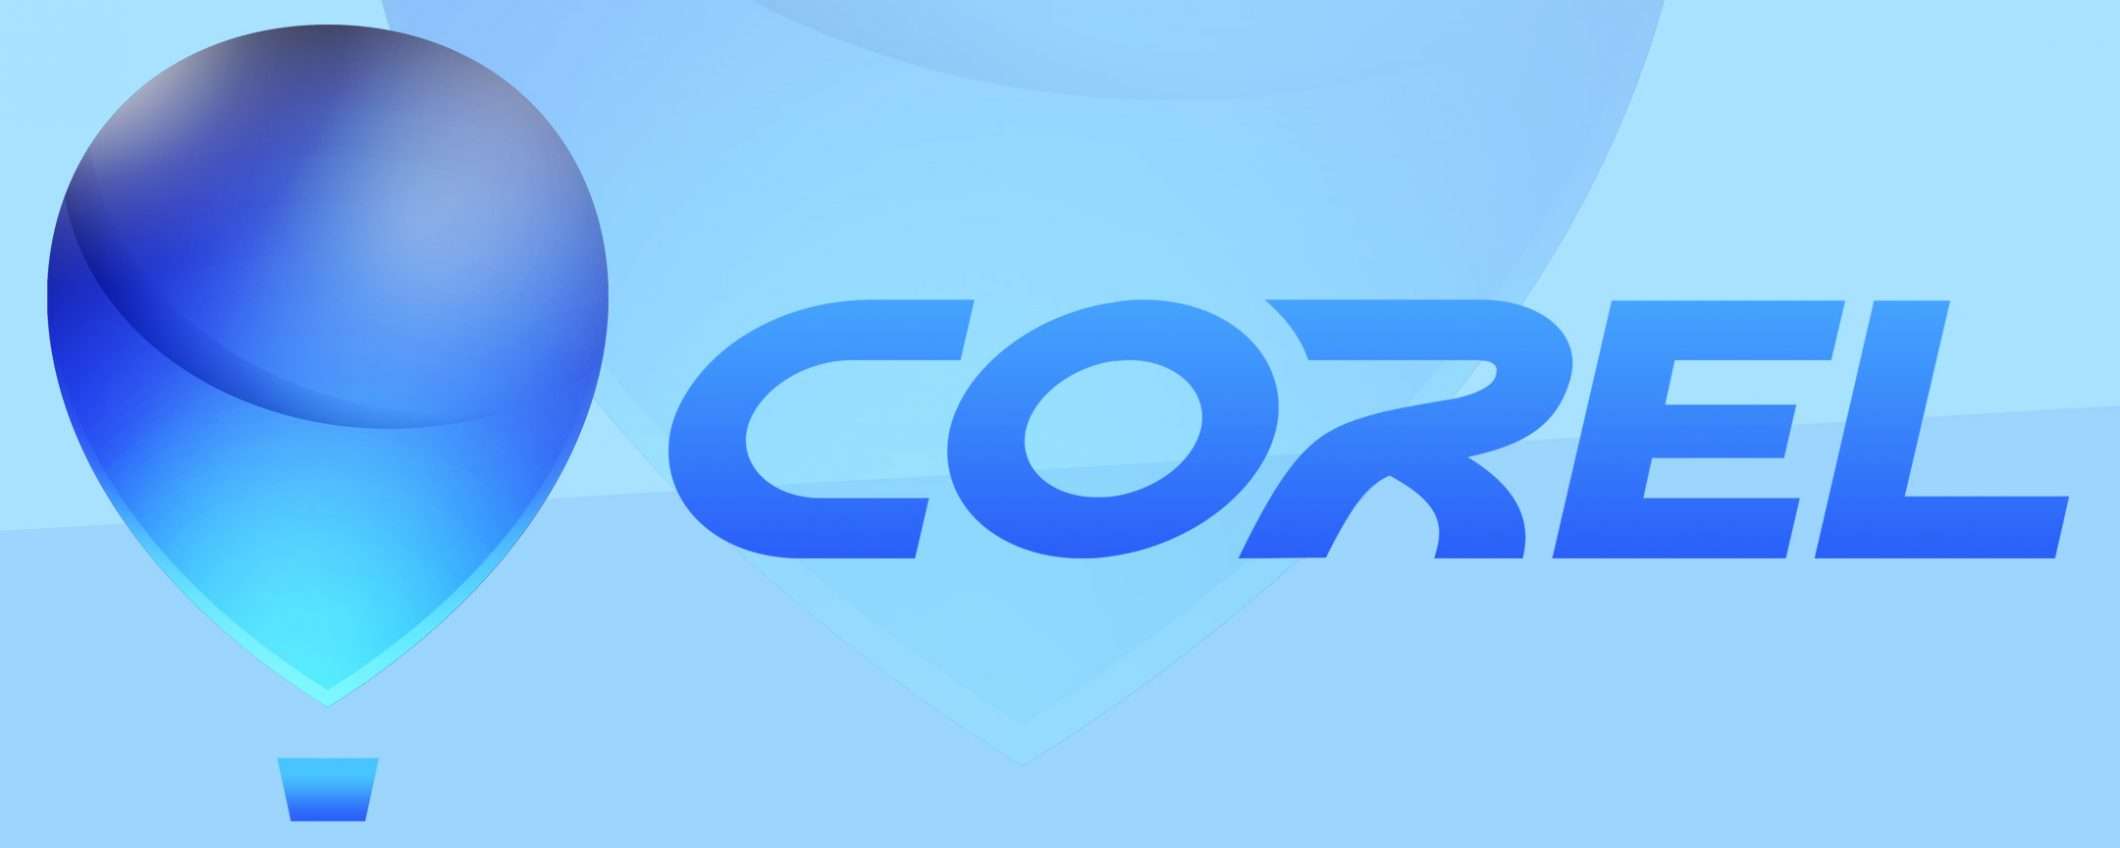 Corel: confermata l'acquisizione da parte di KKR